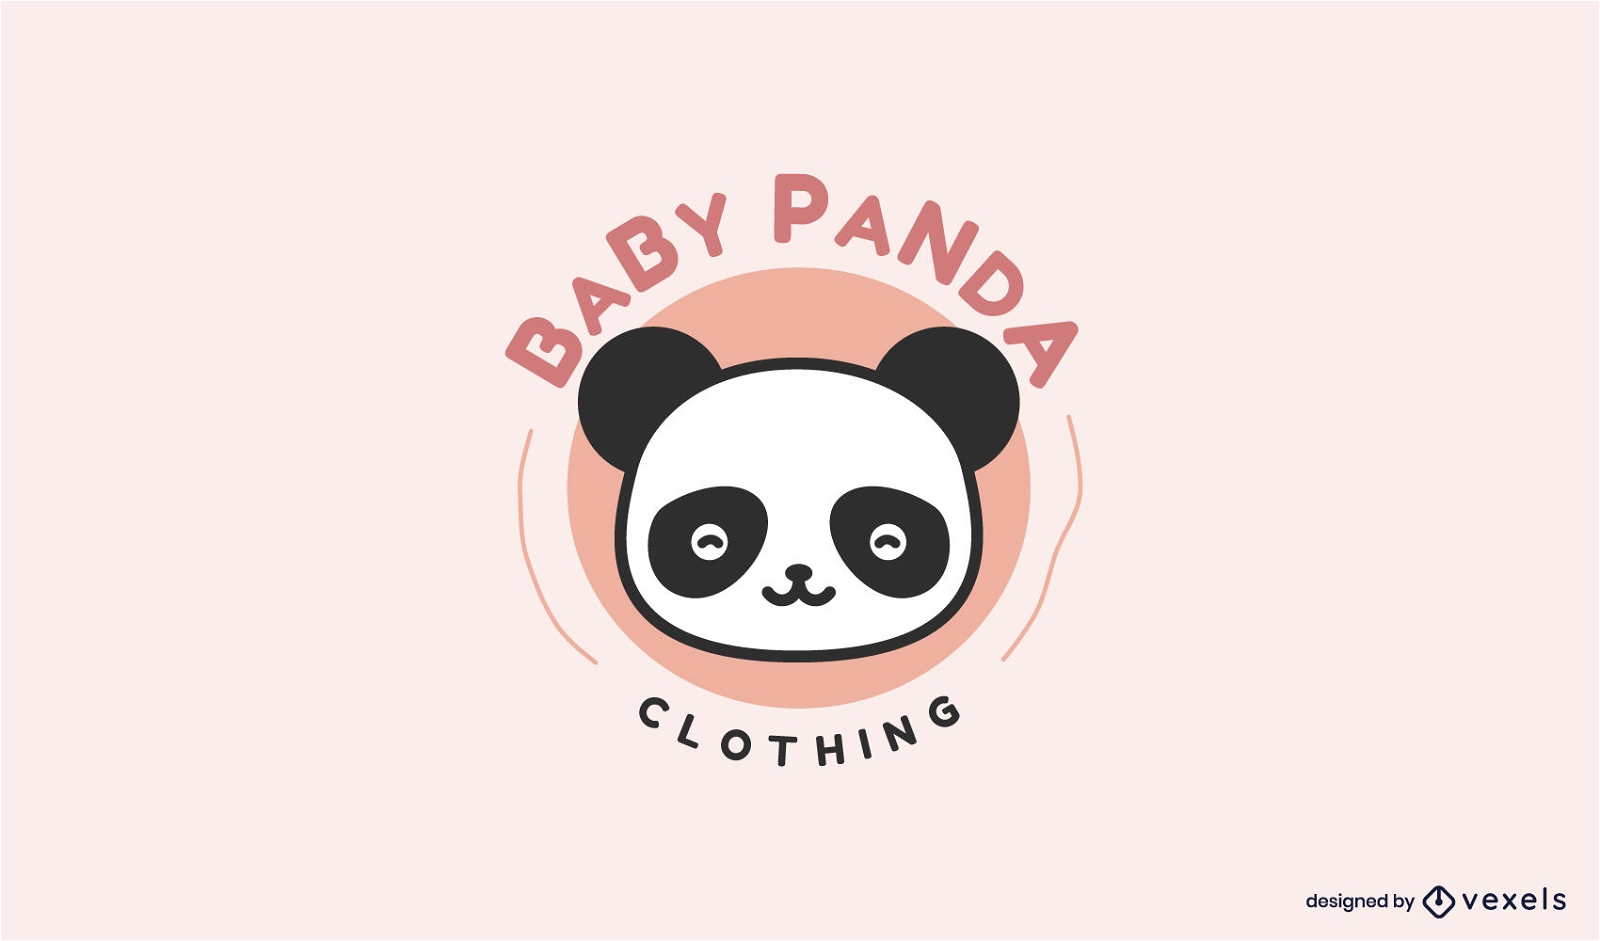 Modelo de logotipo fofo do beb? panda